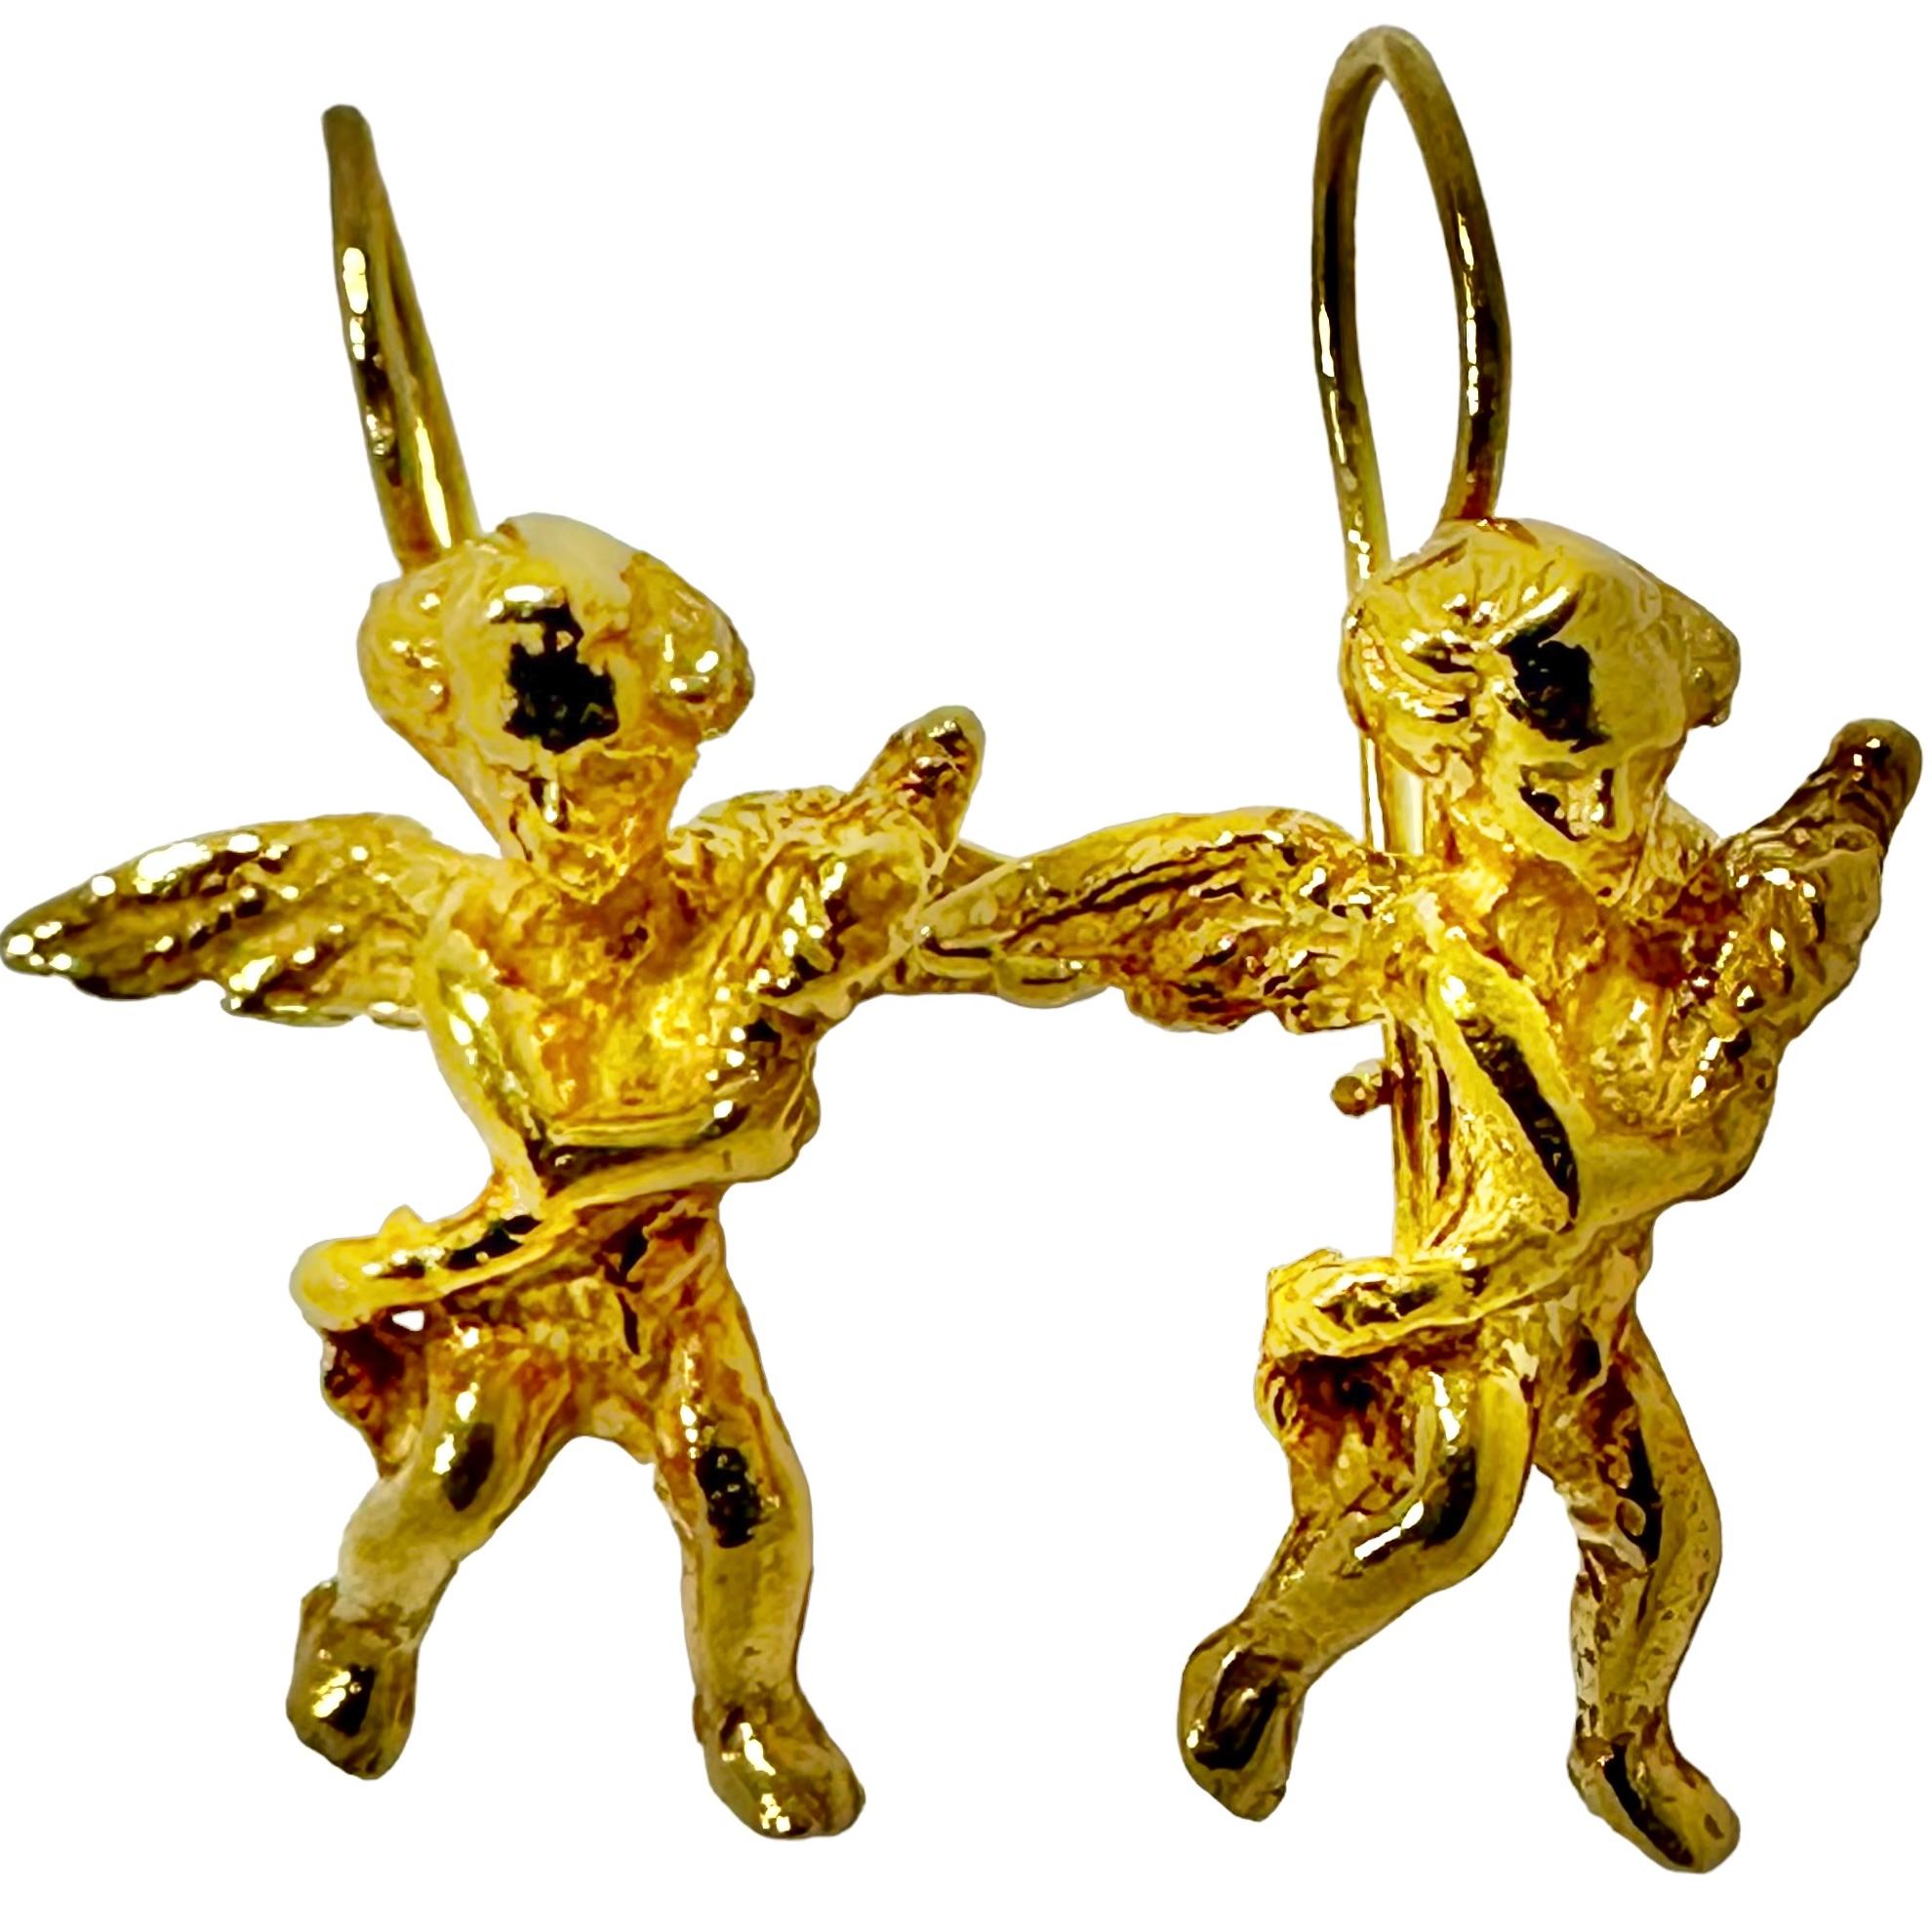 Une paire de petits chérubins divins. Créés en or jaune 14 carats, ces petits anges espiègles semblent porter un objet dans leurs bras. 
Ces chérubins, dont les ailes ont une envergure de 1,5 cm et qui mesurent 1,5 cm jusqu'au sommet du fil